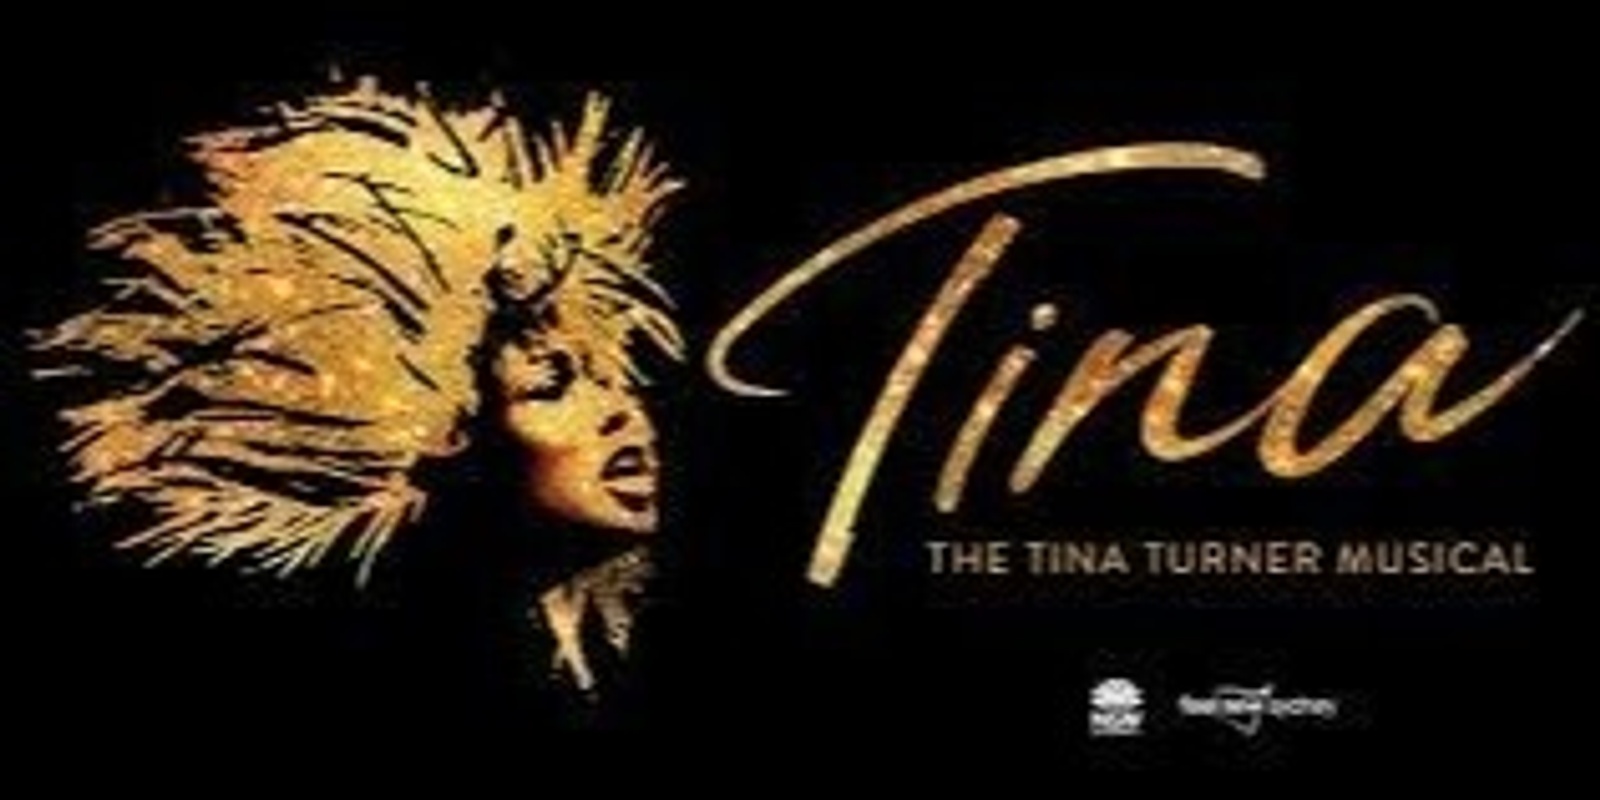 TINA - The Tina Turner Musical with Port Bus